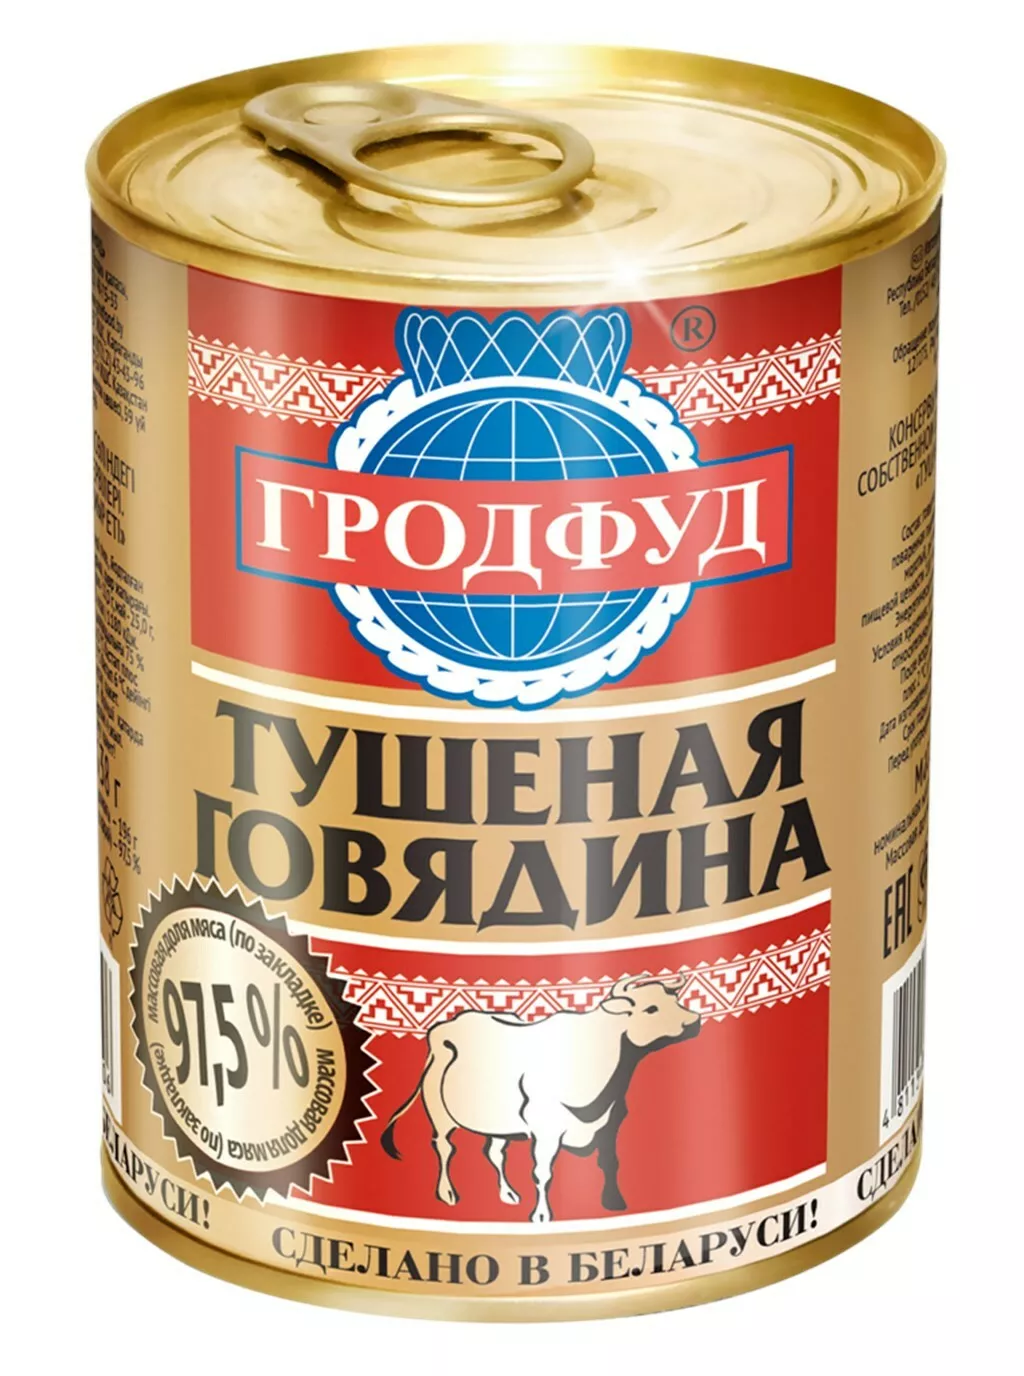 говядина тушеная, гродфуд, 338 гр. в Москве и Московской области